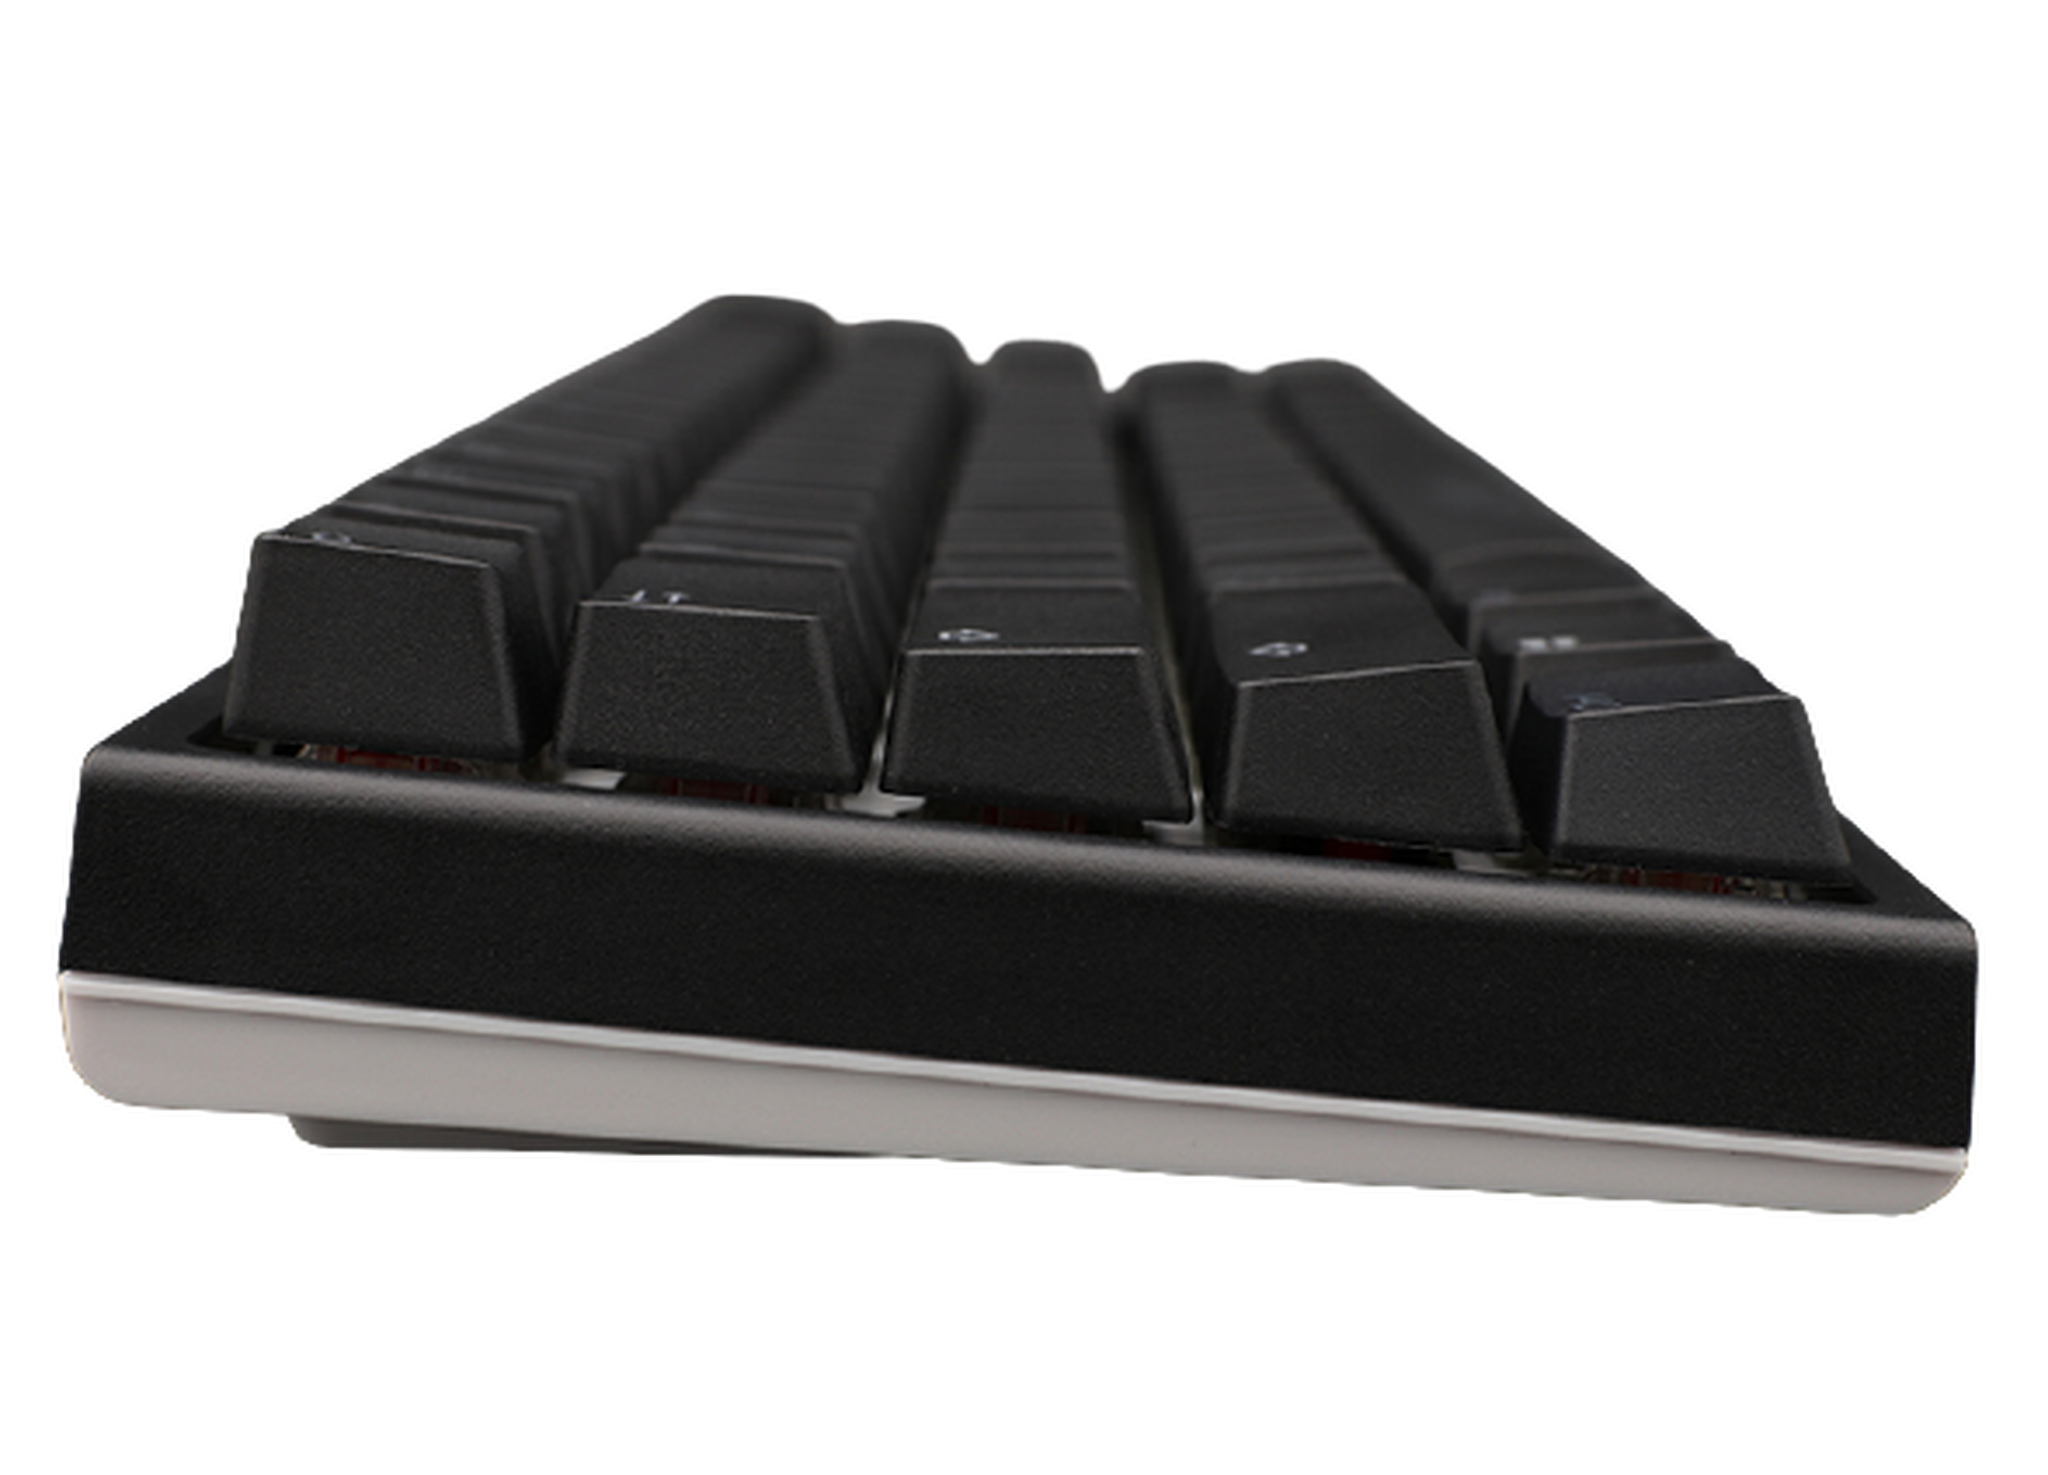 لوحة مفاتيح للألعاب داكي ون 2 اس-اف بمفاتيح ميكانيكية حمراء وإضاءة ار-جي-بي